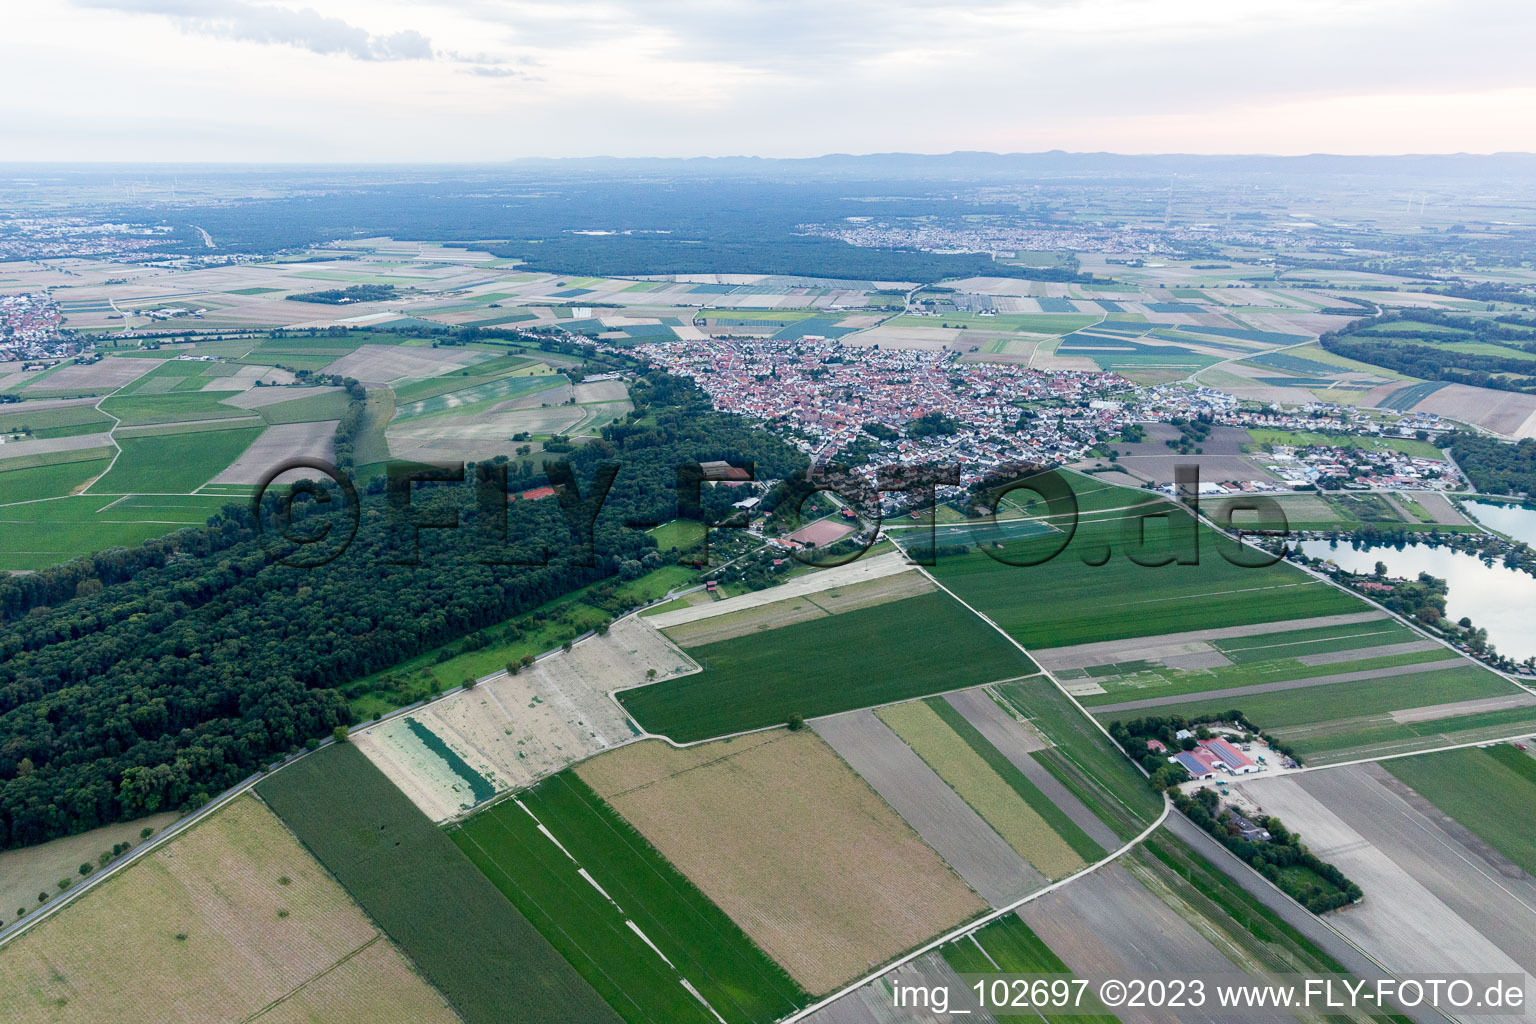 Waldsee im Bundesland Rheinland-Pfalz, Deutschland aus der Drohnenperspektive